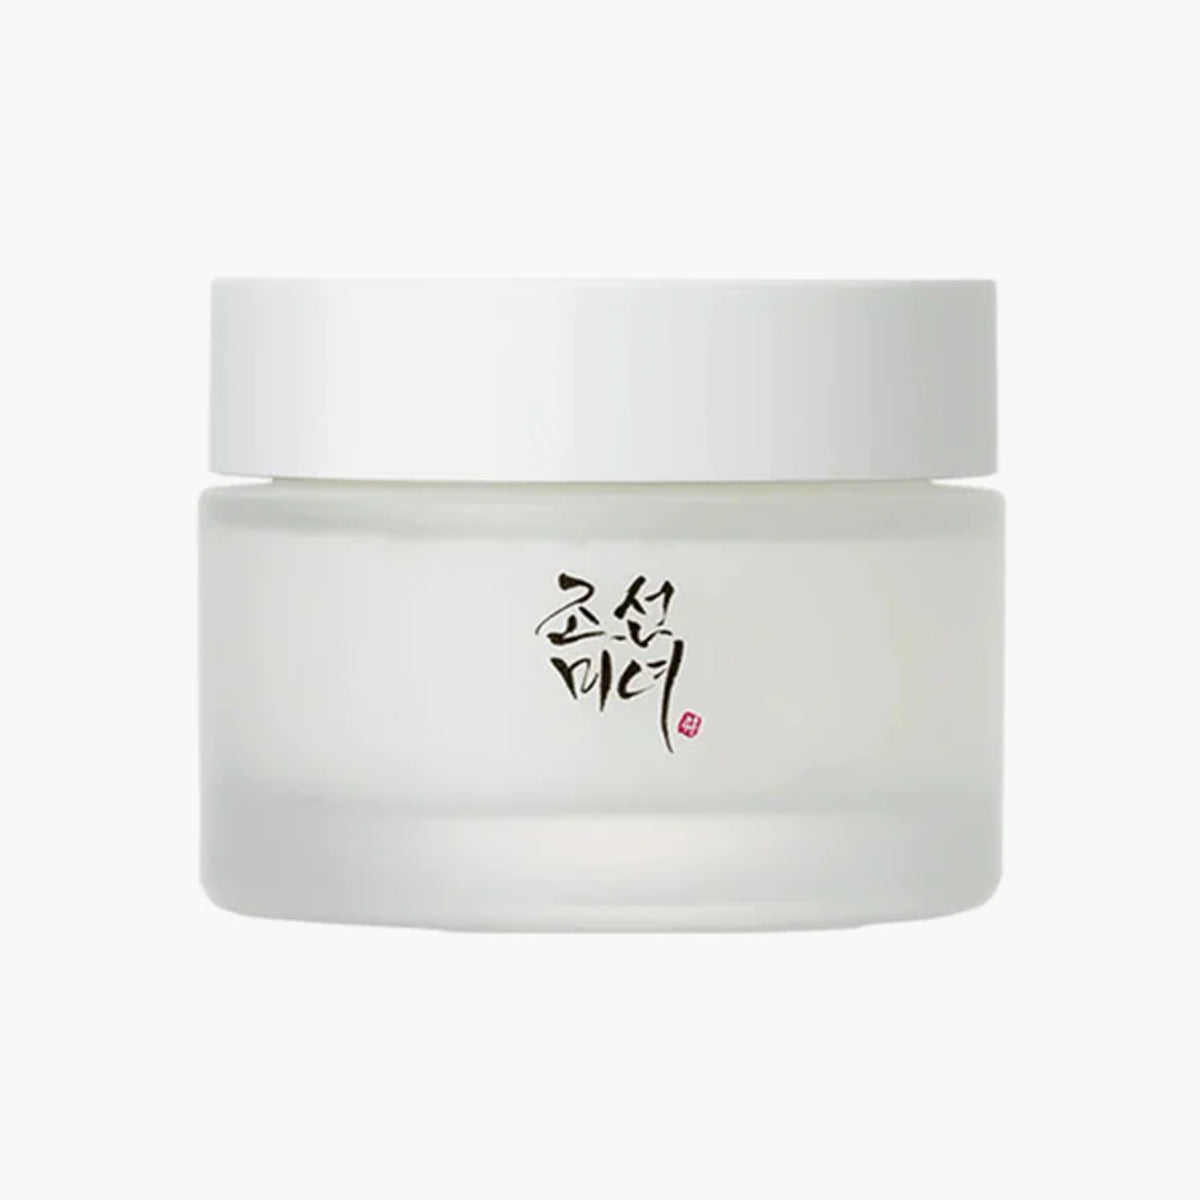 Beauty of Joseon Dynasty Cream 50 ML | Makeupstash Pakistan |Authentic Korean Skincare in Pakistan